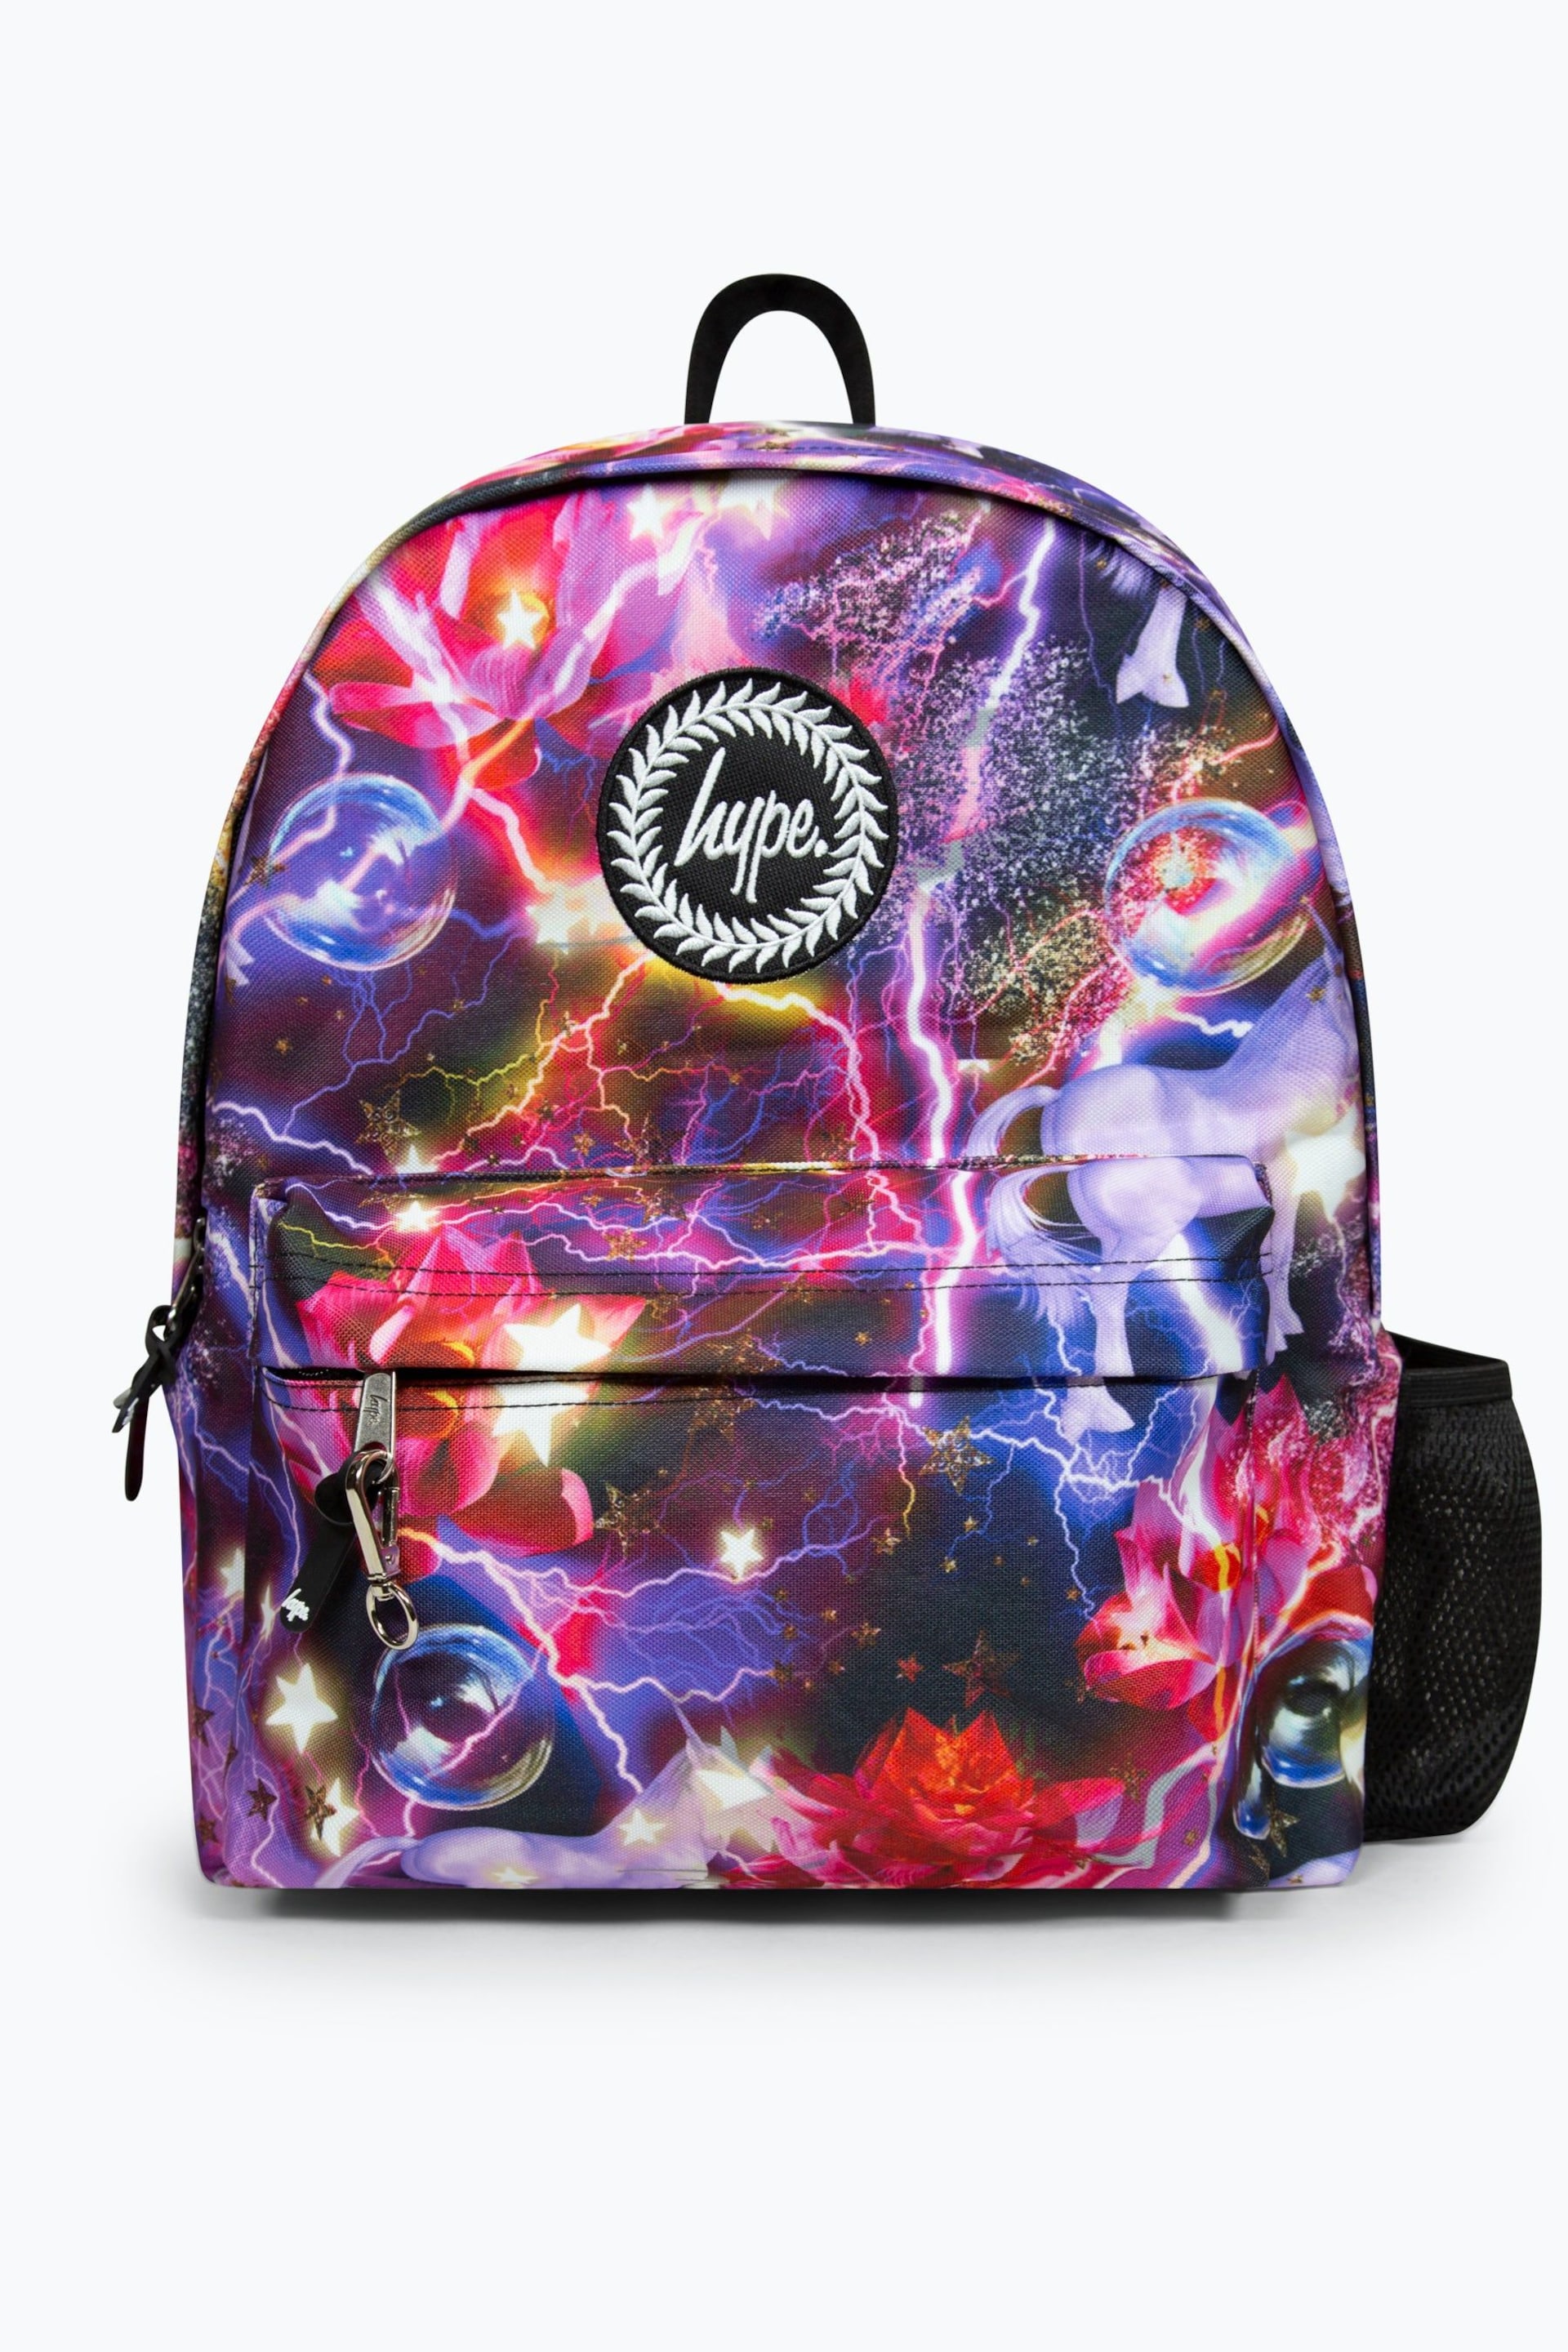 Hype. Unicorn Lightning Badge Backpack - Image 1 of 11